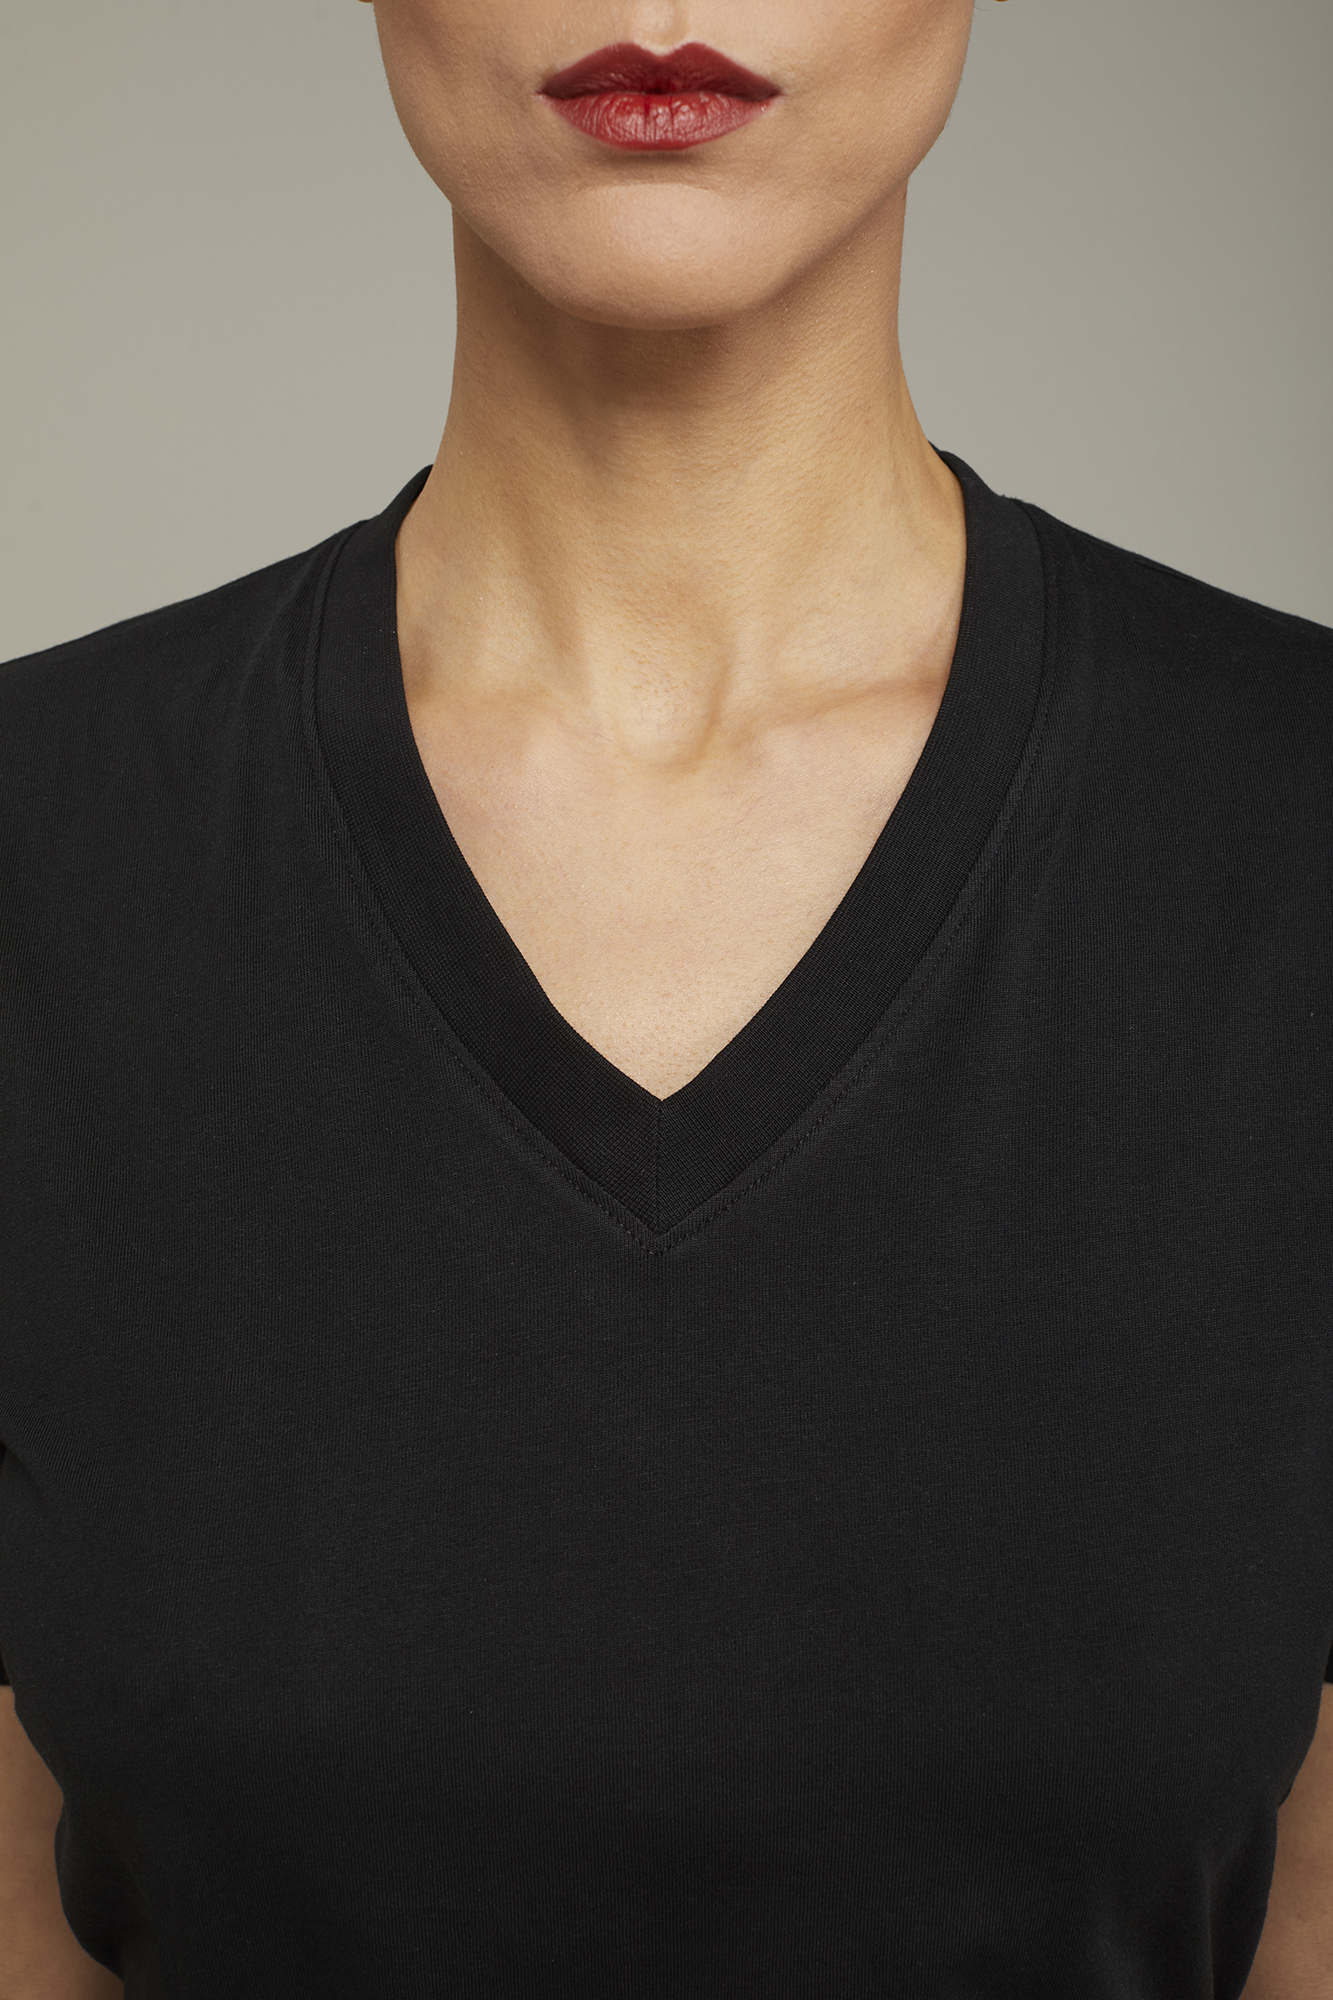 Damen-T-Shirt mit V-Ausschnitt aus 100 % Baumwolle in normaler Passform image number null